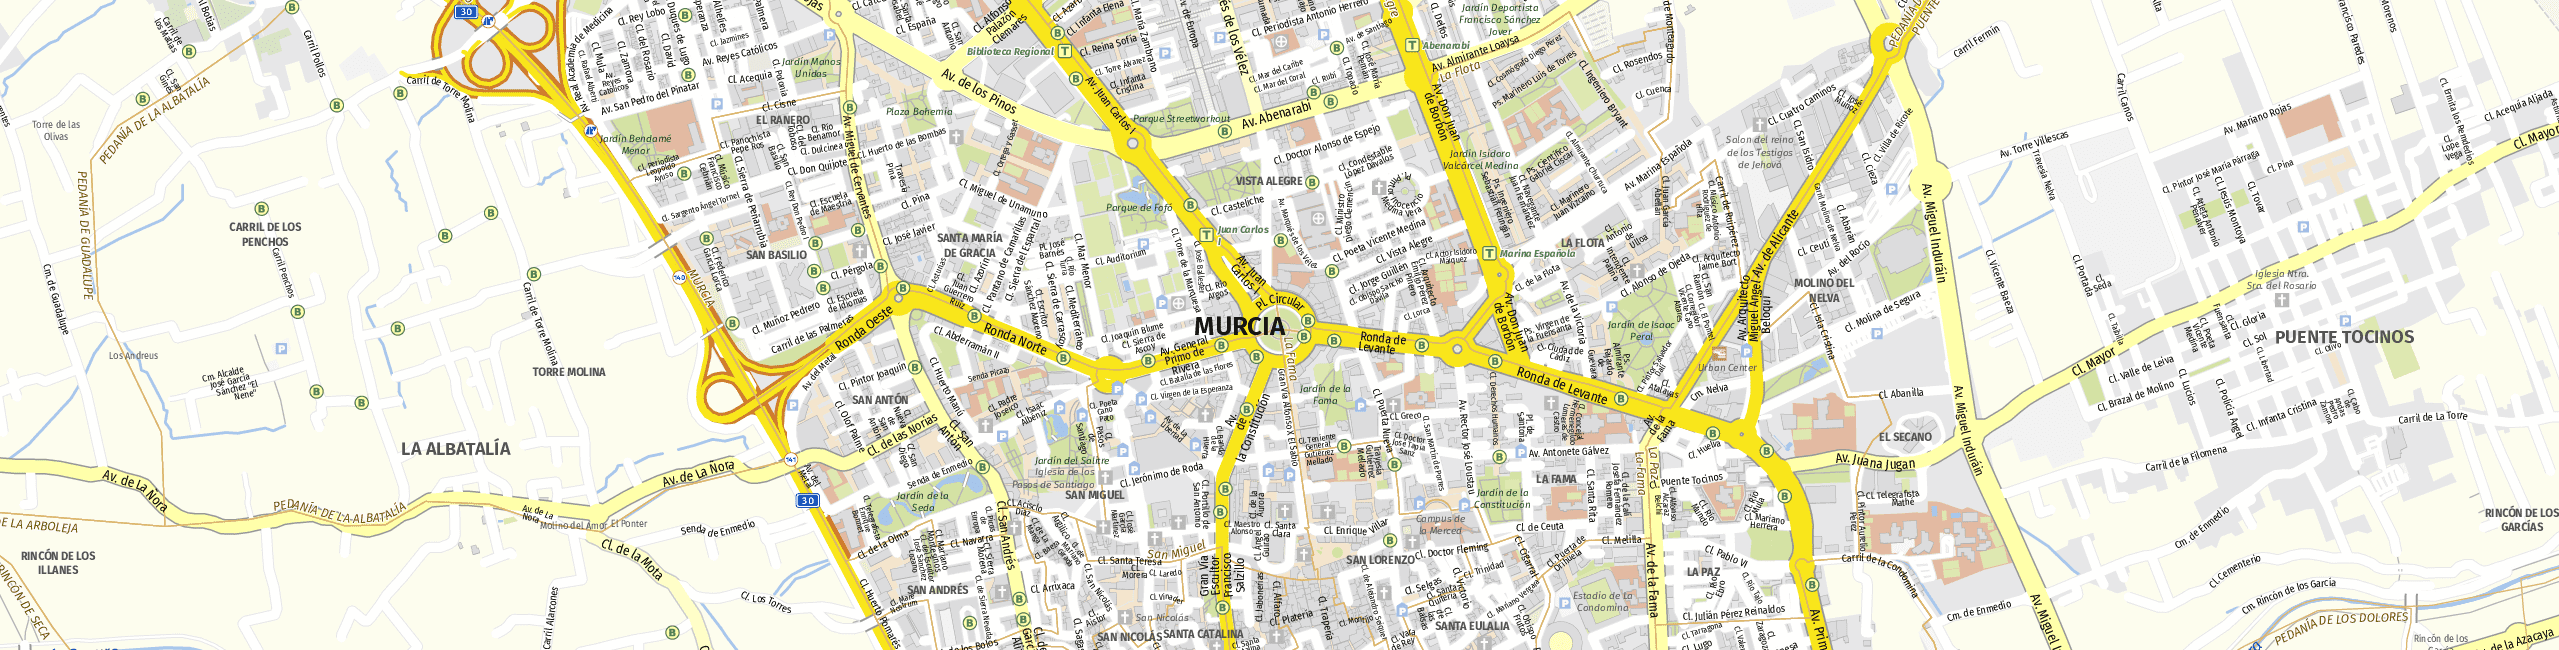 Stadtplan Murcia zum Downloaden.